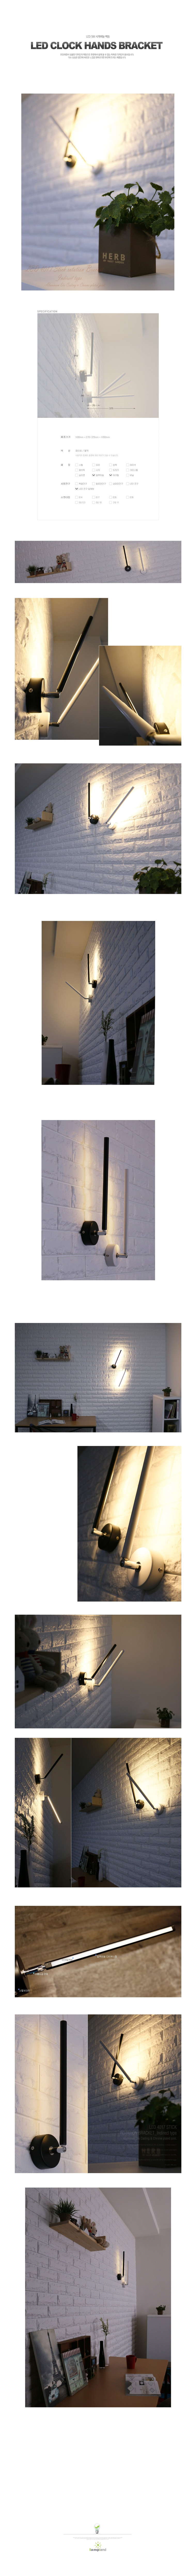 [LED 5W] 시계바늘1등 벽등